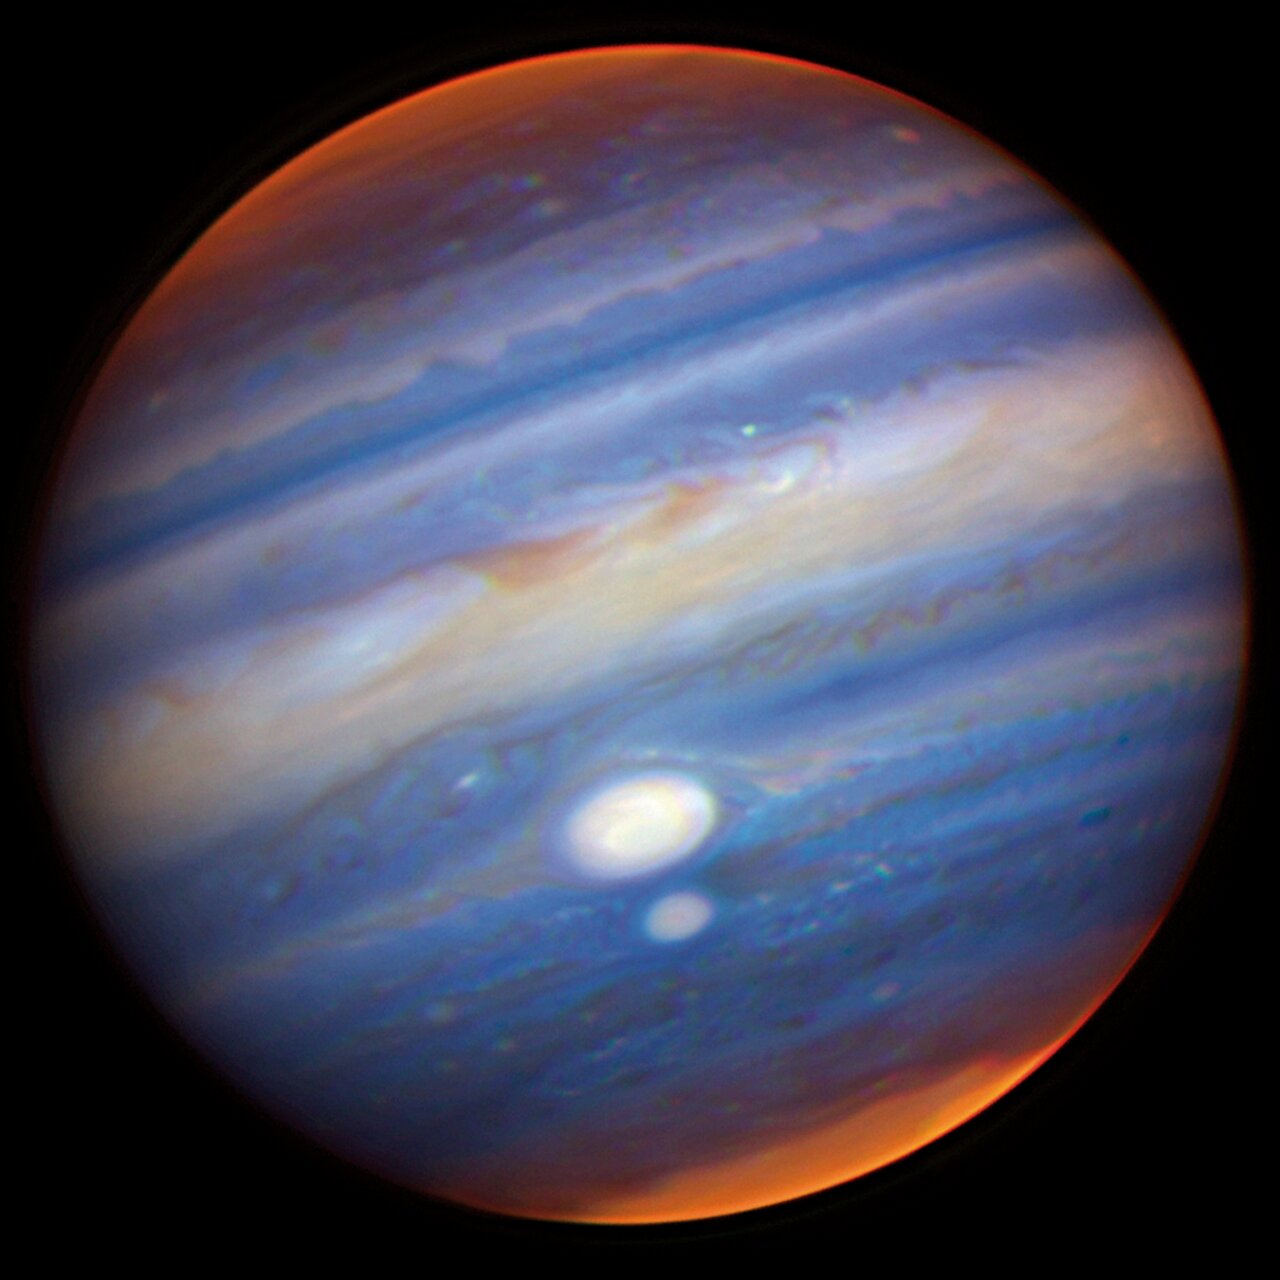 Jupiter’s Red Spots December 27, 2011